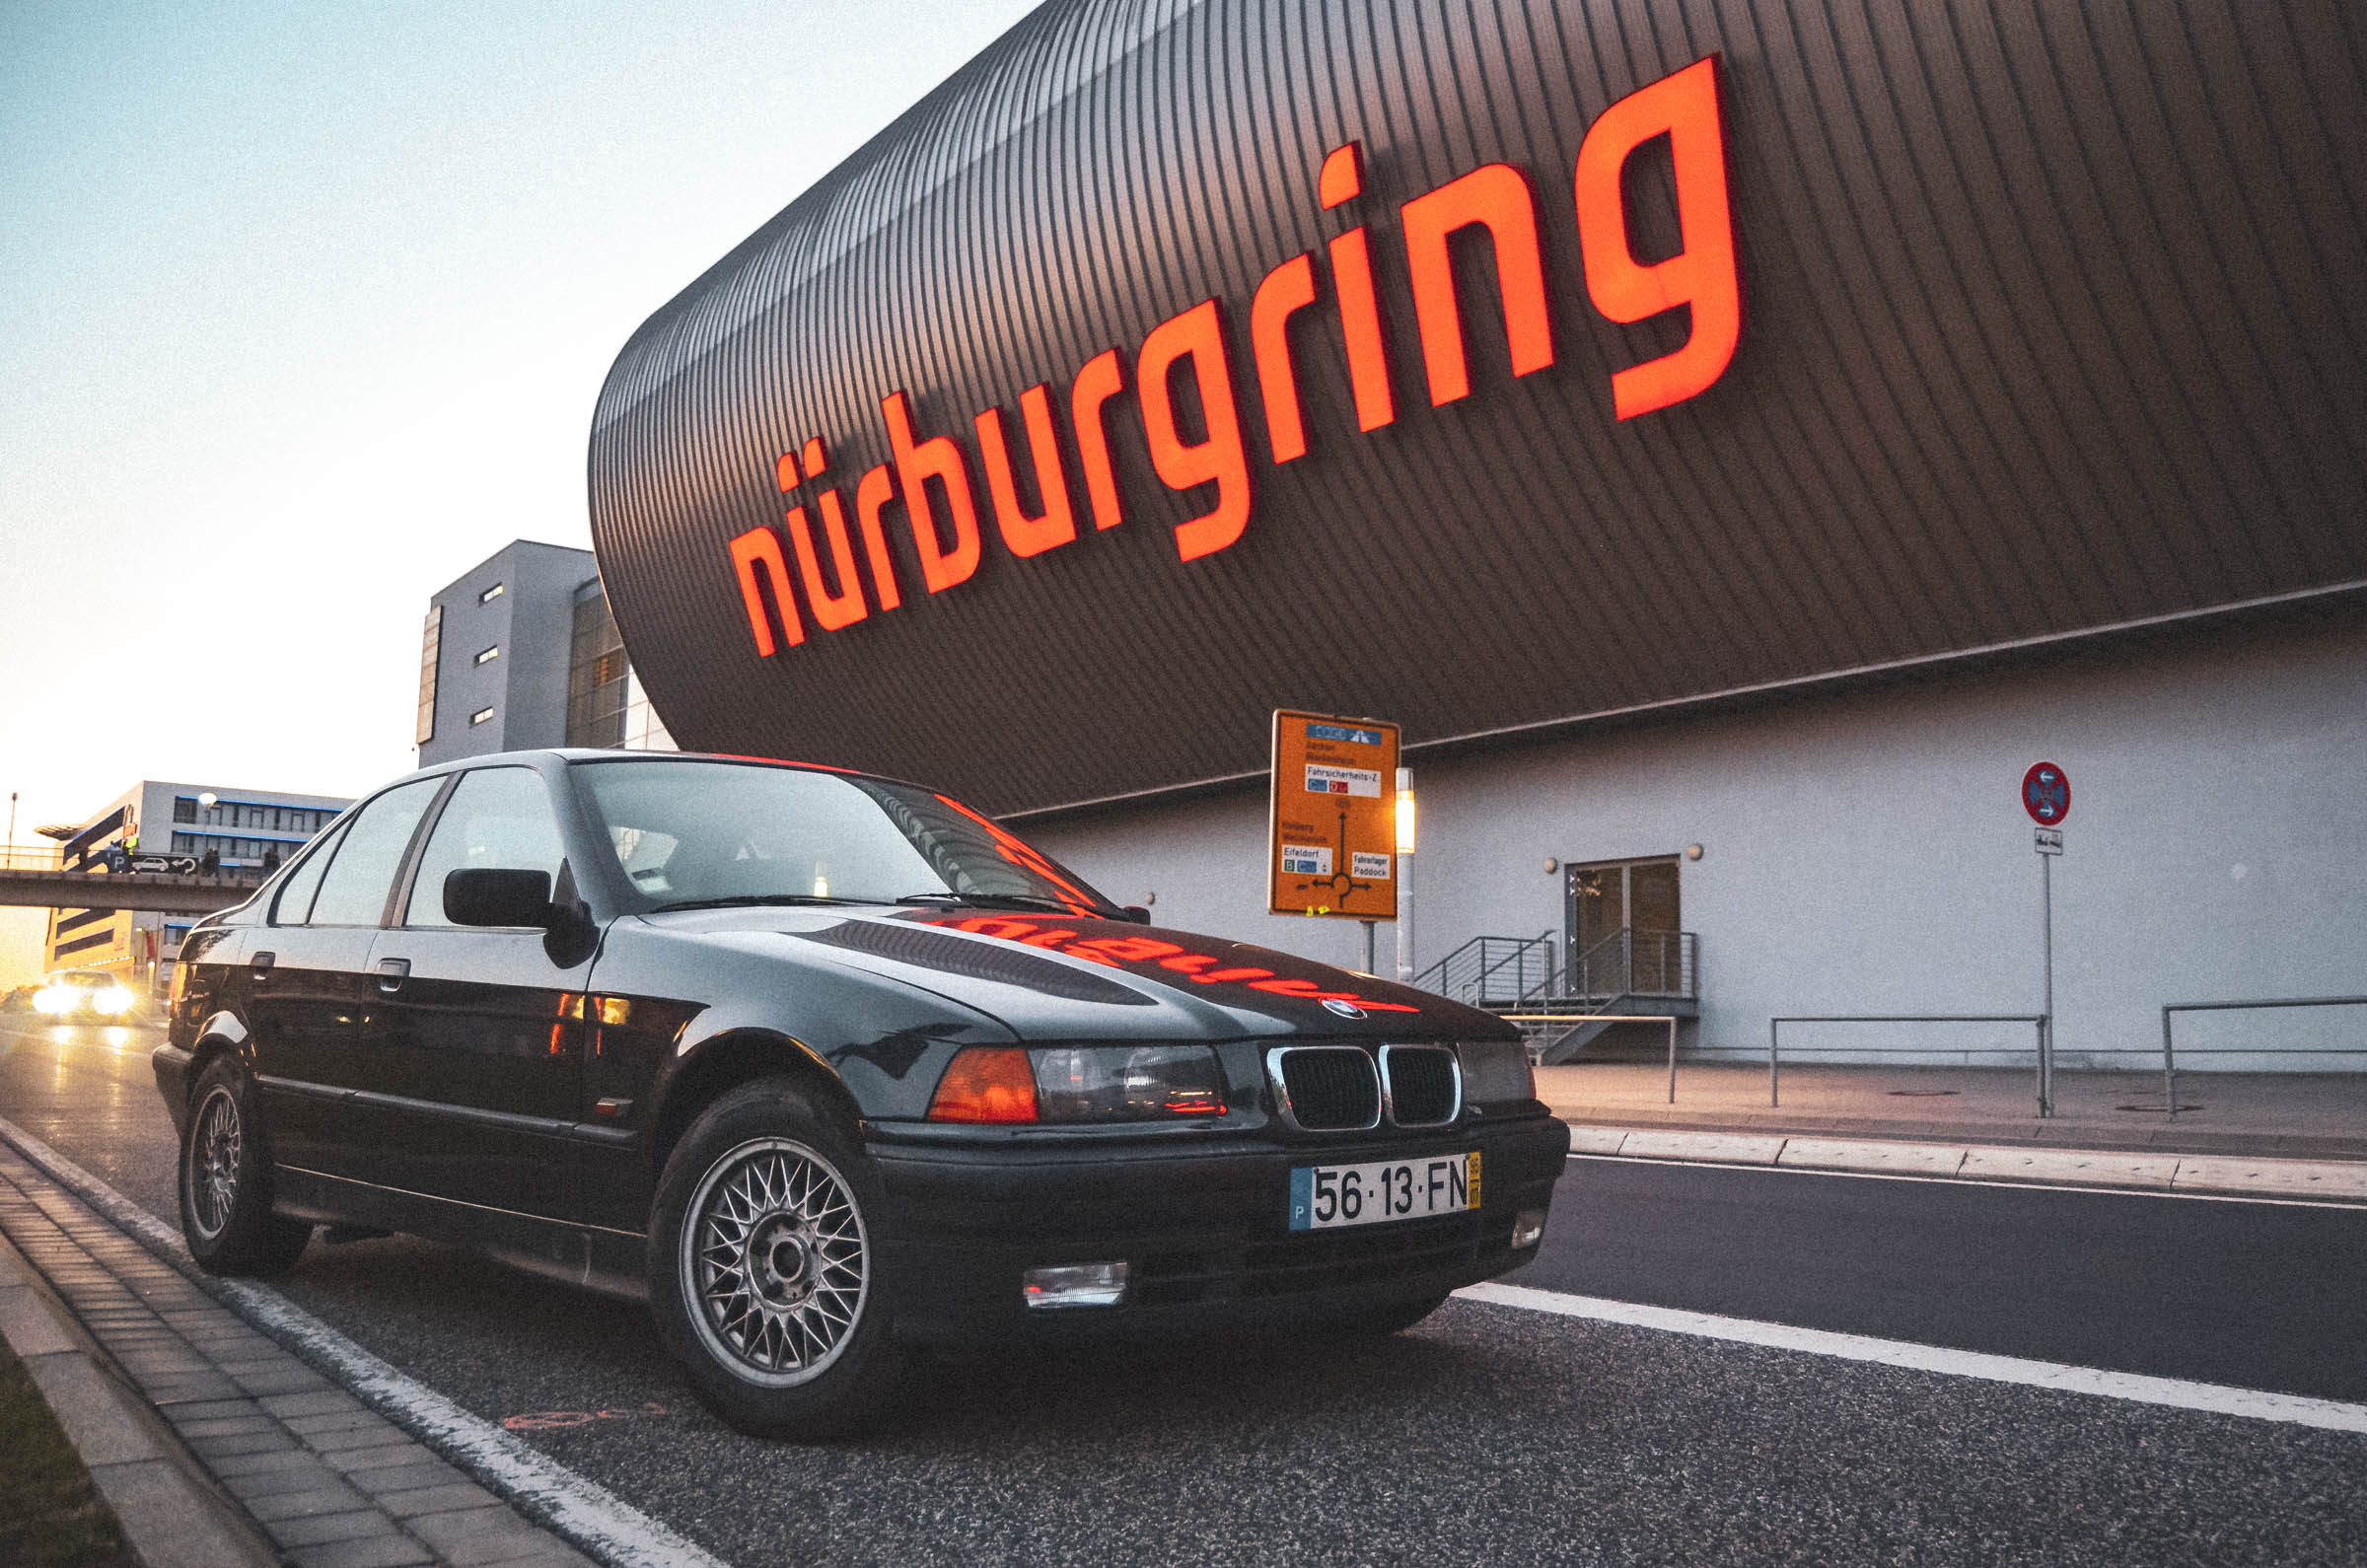 Entrevista: “Ir a Nürburgring com um carro de mil euros”